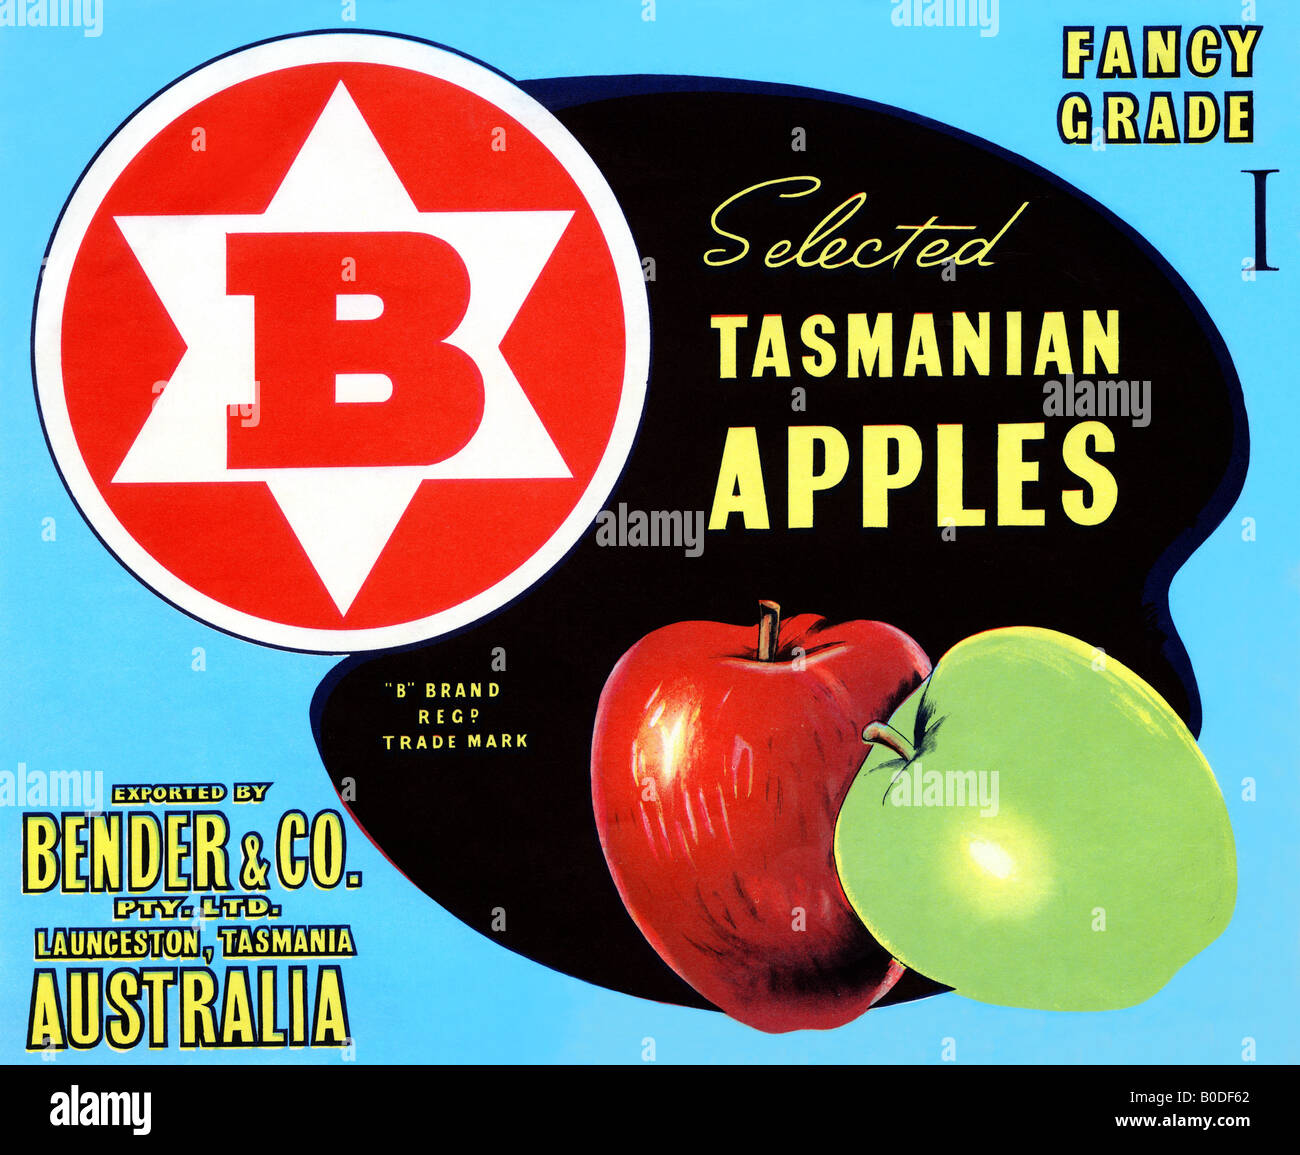 Fancy grado seleccionado las manzanas de Tasmania Foto de stock